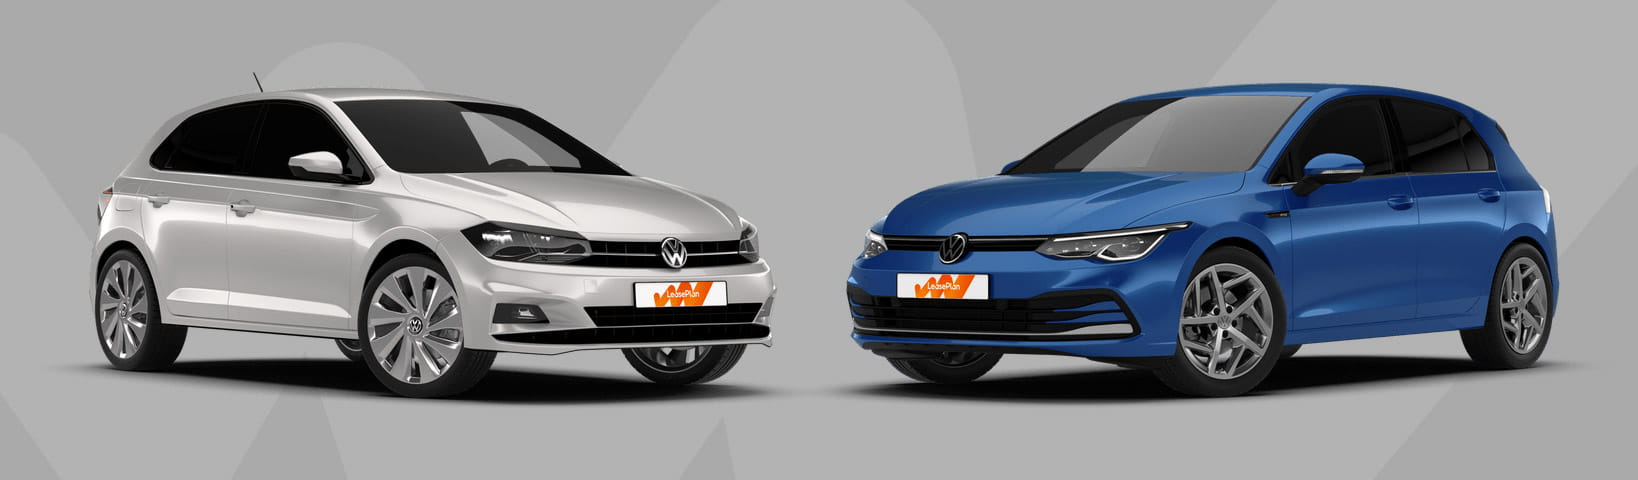 Volkswagen Golf 5: afmetingen, interieurs, motoren, prijzen en concurrenten  - AutoScout24